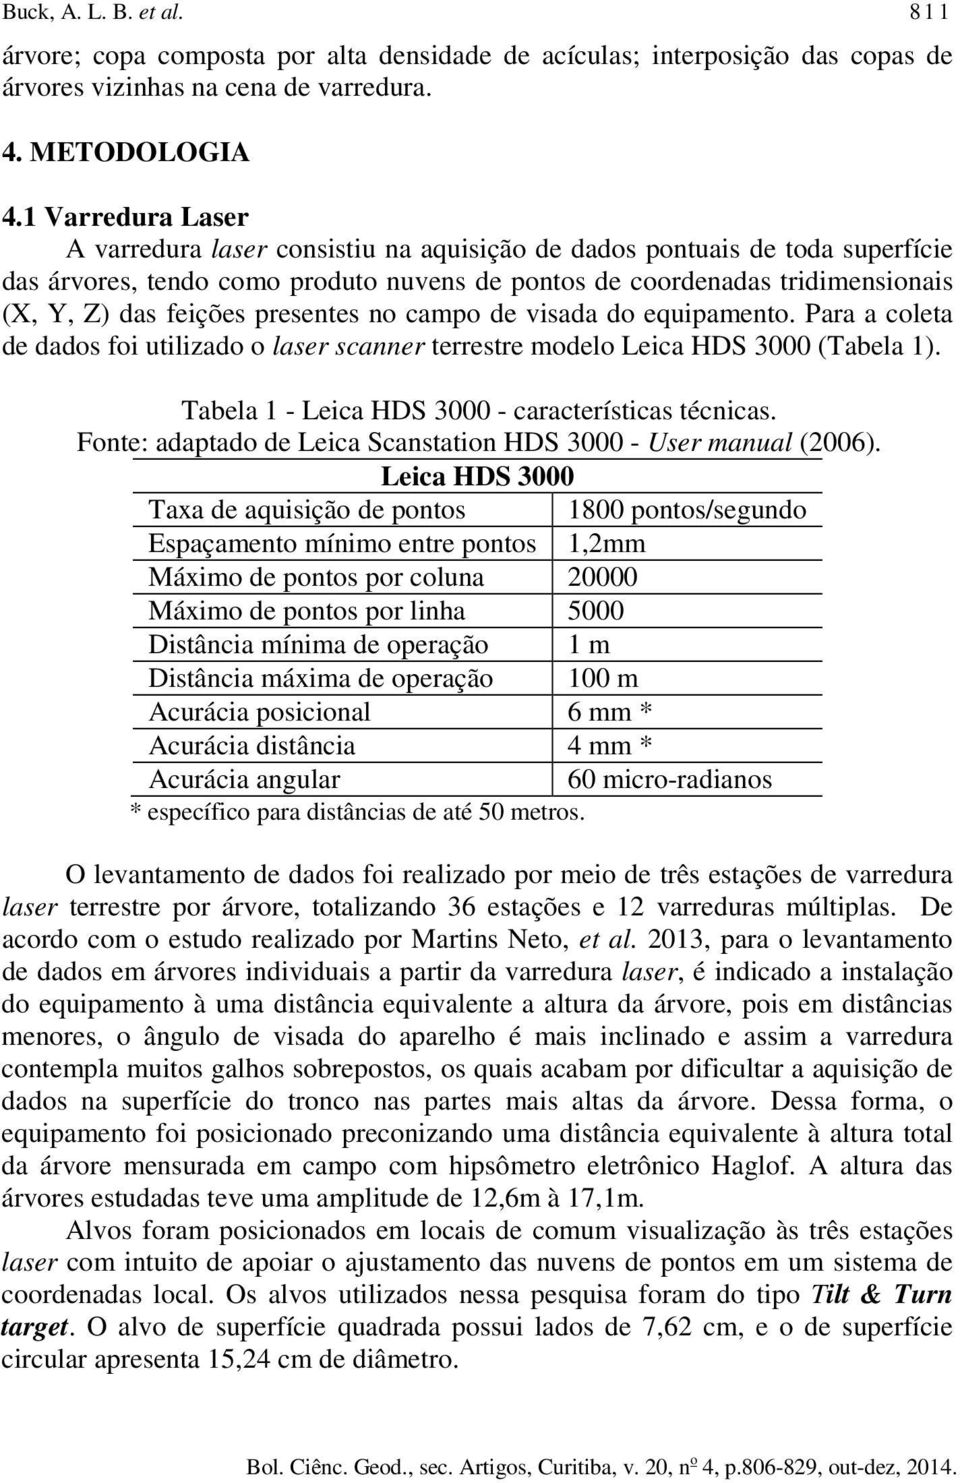 presentes no campo de visada do equipamento. Para a coleta de dados foi utilizado o laser scanner terrestre modelo Leica HDS 3000 (Tabela 1). Tabela 1 - Leica HDS 3000 - características técnicas.